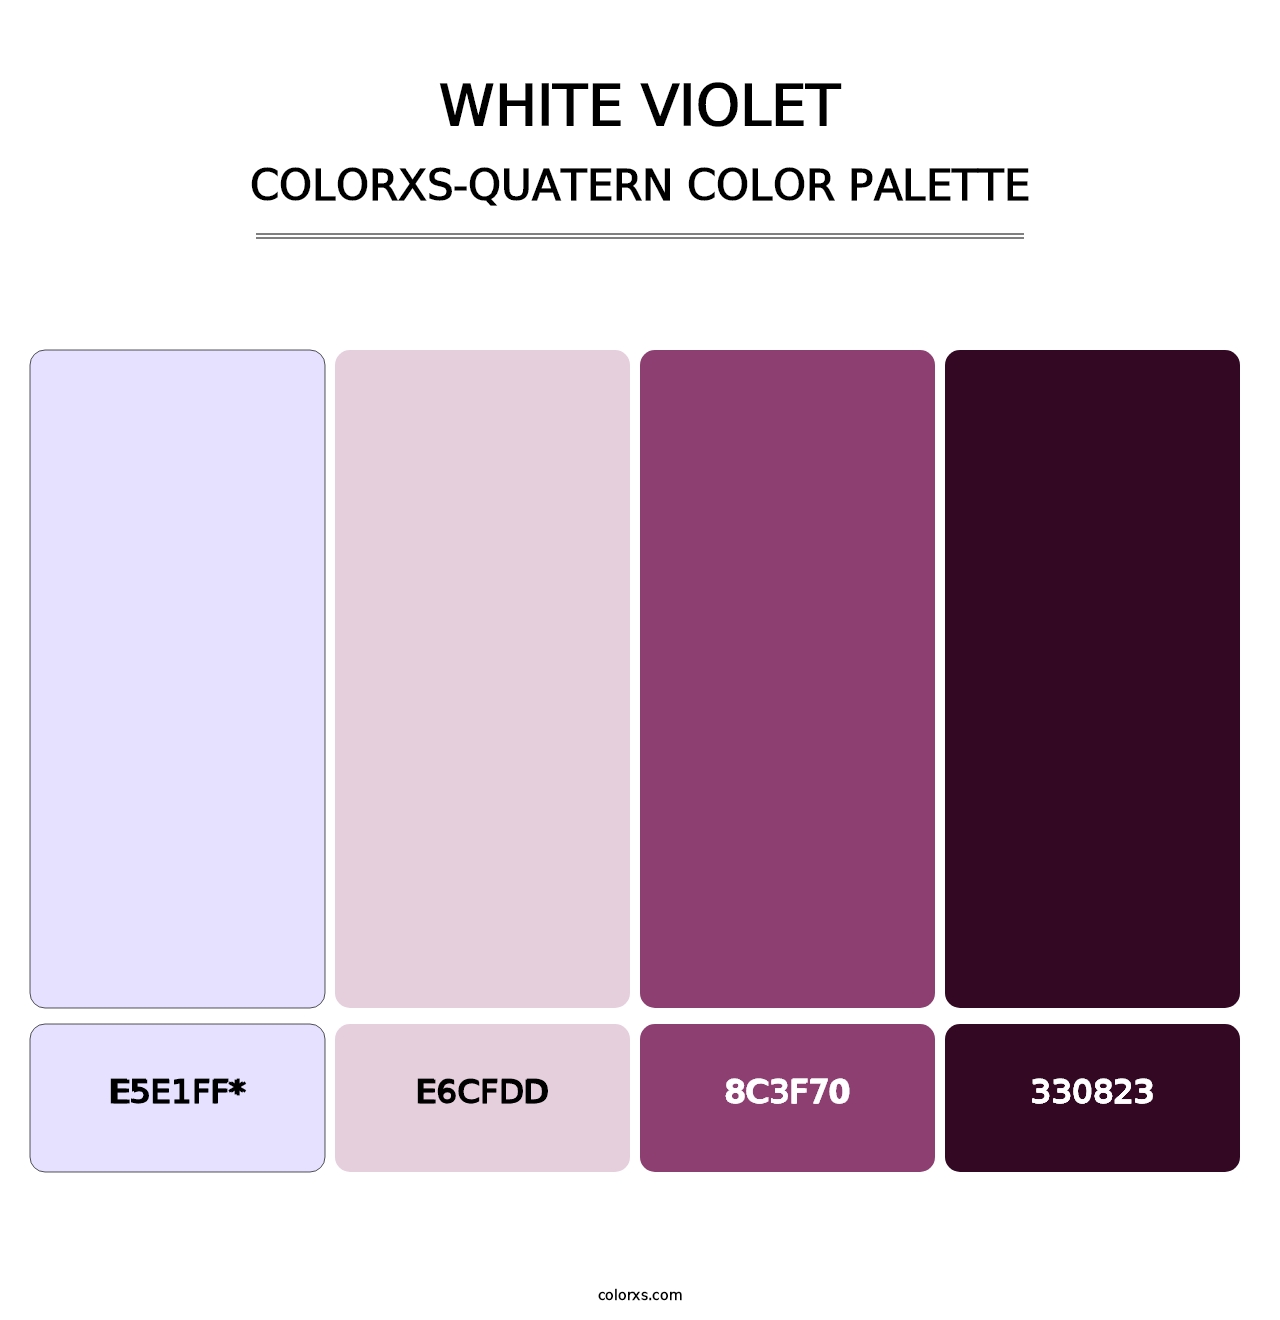 White Violet - Colorxs Quatern Palette